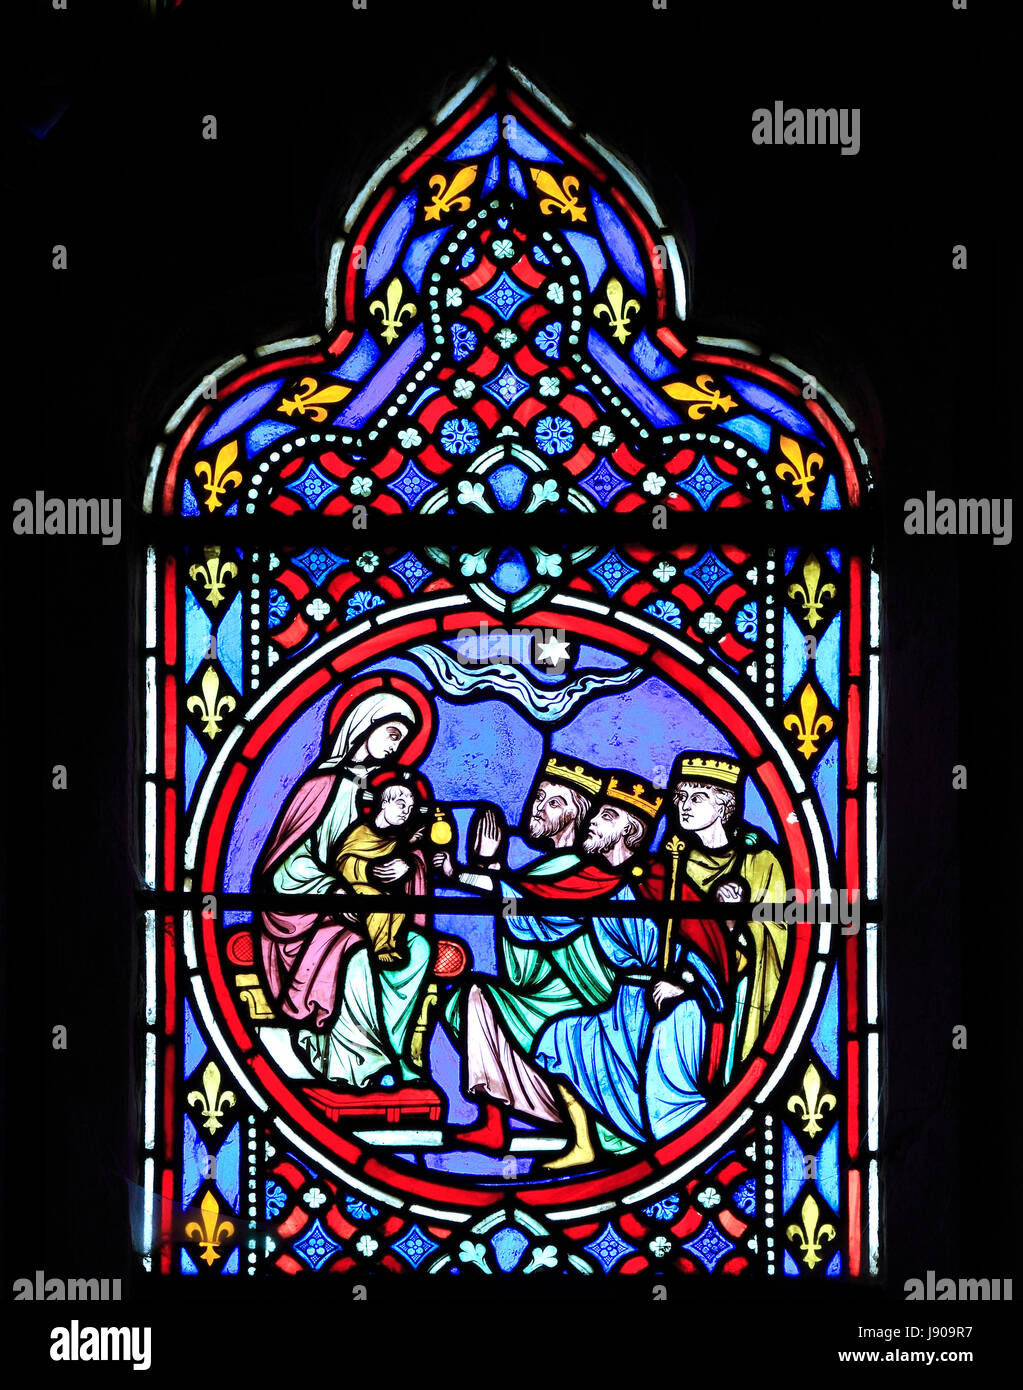 Fenêtre de la Nativité, le vitrail par Oudinot de Paris, 1861, Église Feltwell, Norfolk, Epiphany, visite des Rois Mages, 3 rois, à l'enfant Jésus et Marie Banque D'Images